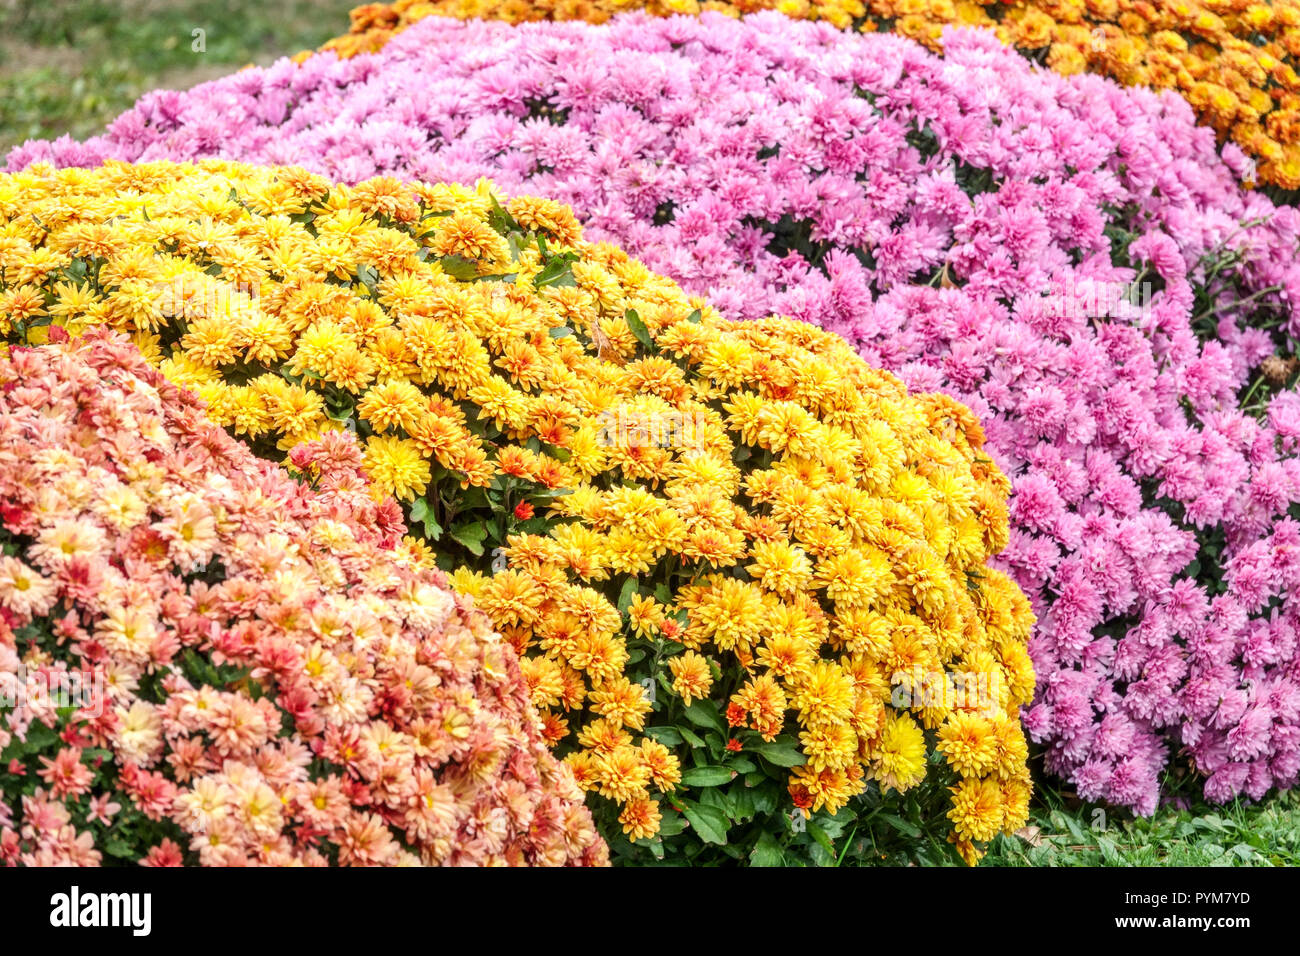 Viele Blumen Farbkombination Chrysantheme, Herbstblumen im Garten, Kontrast und bunte Blumenbeet Oktober Garten Stockfoto